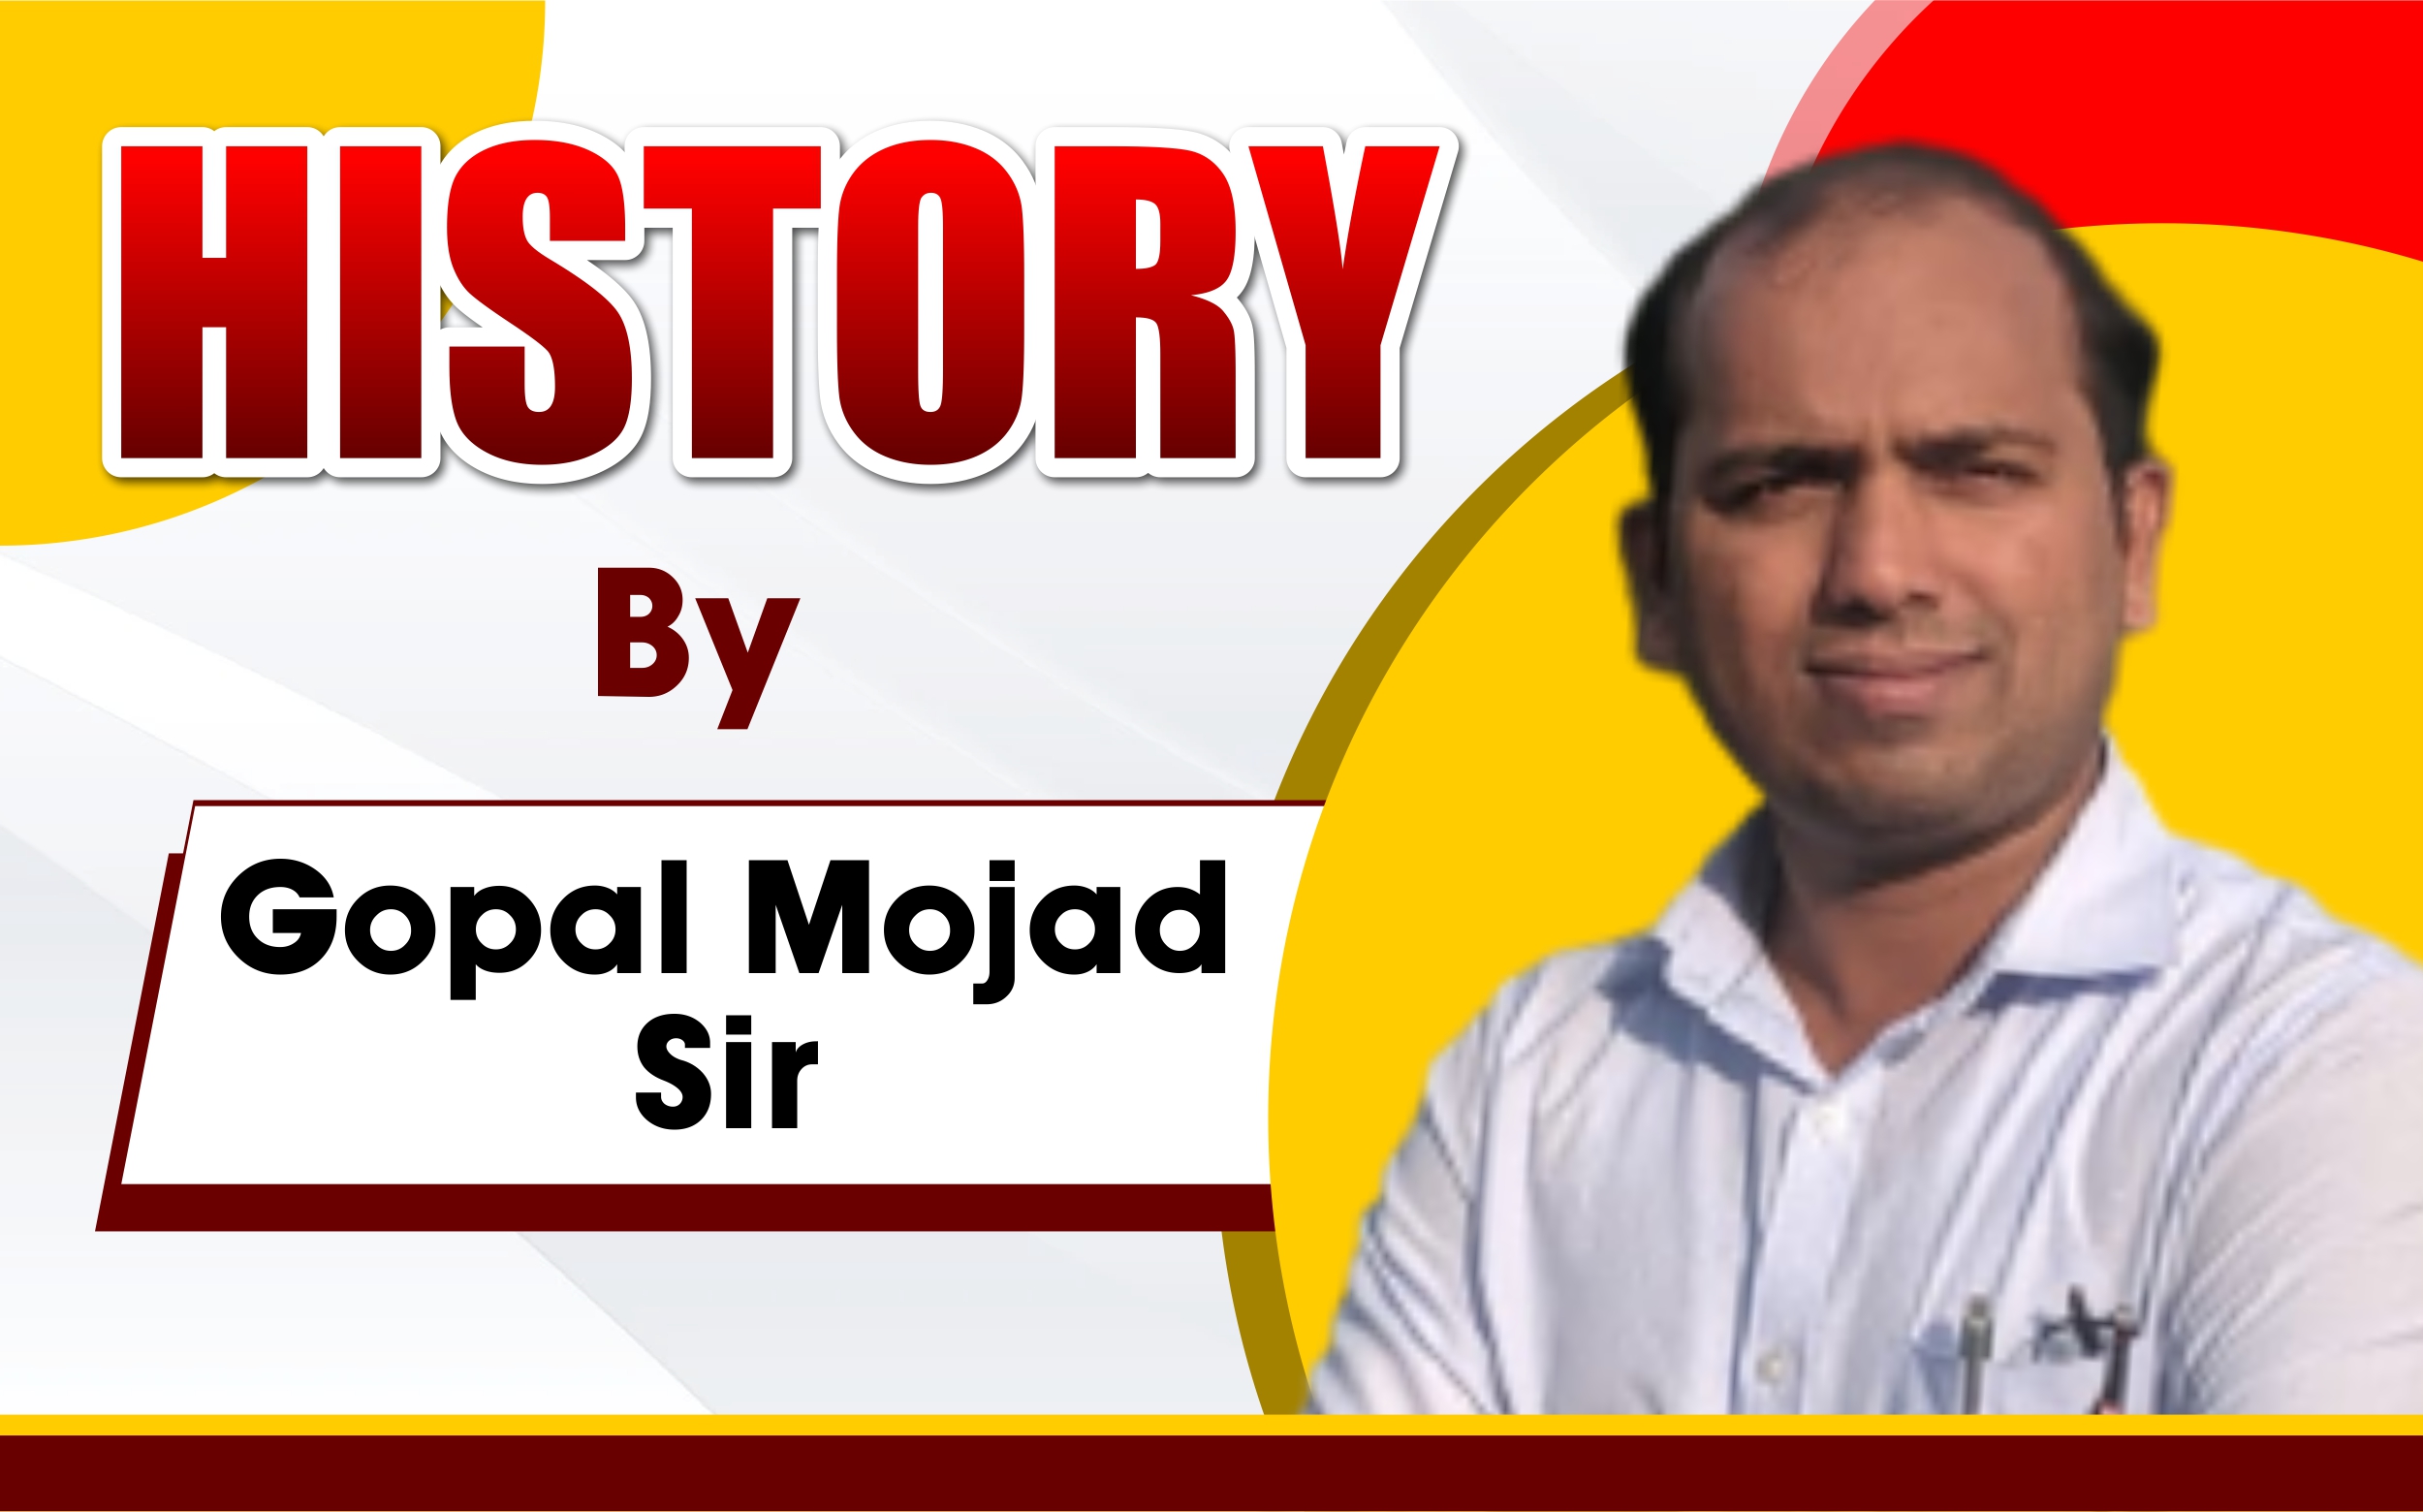 Gopal Mojad Sir